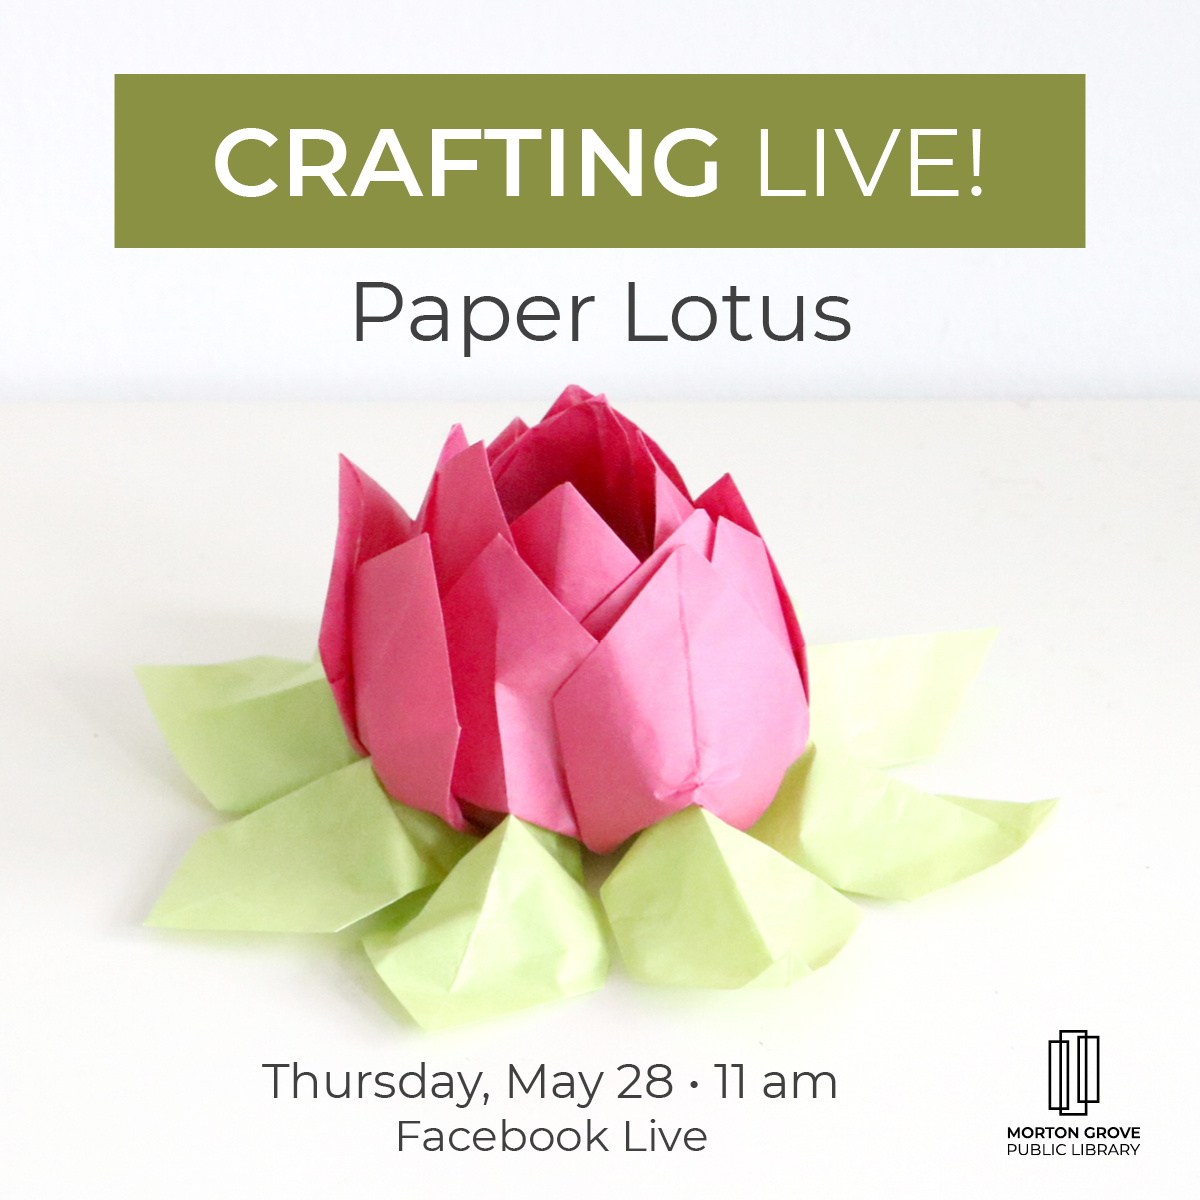 Paper lotus